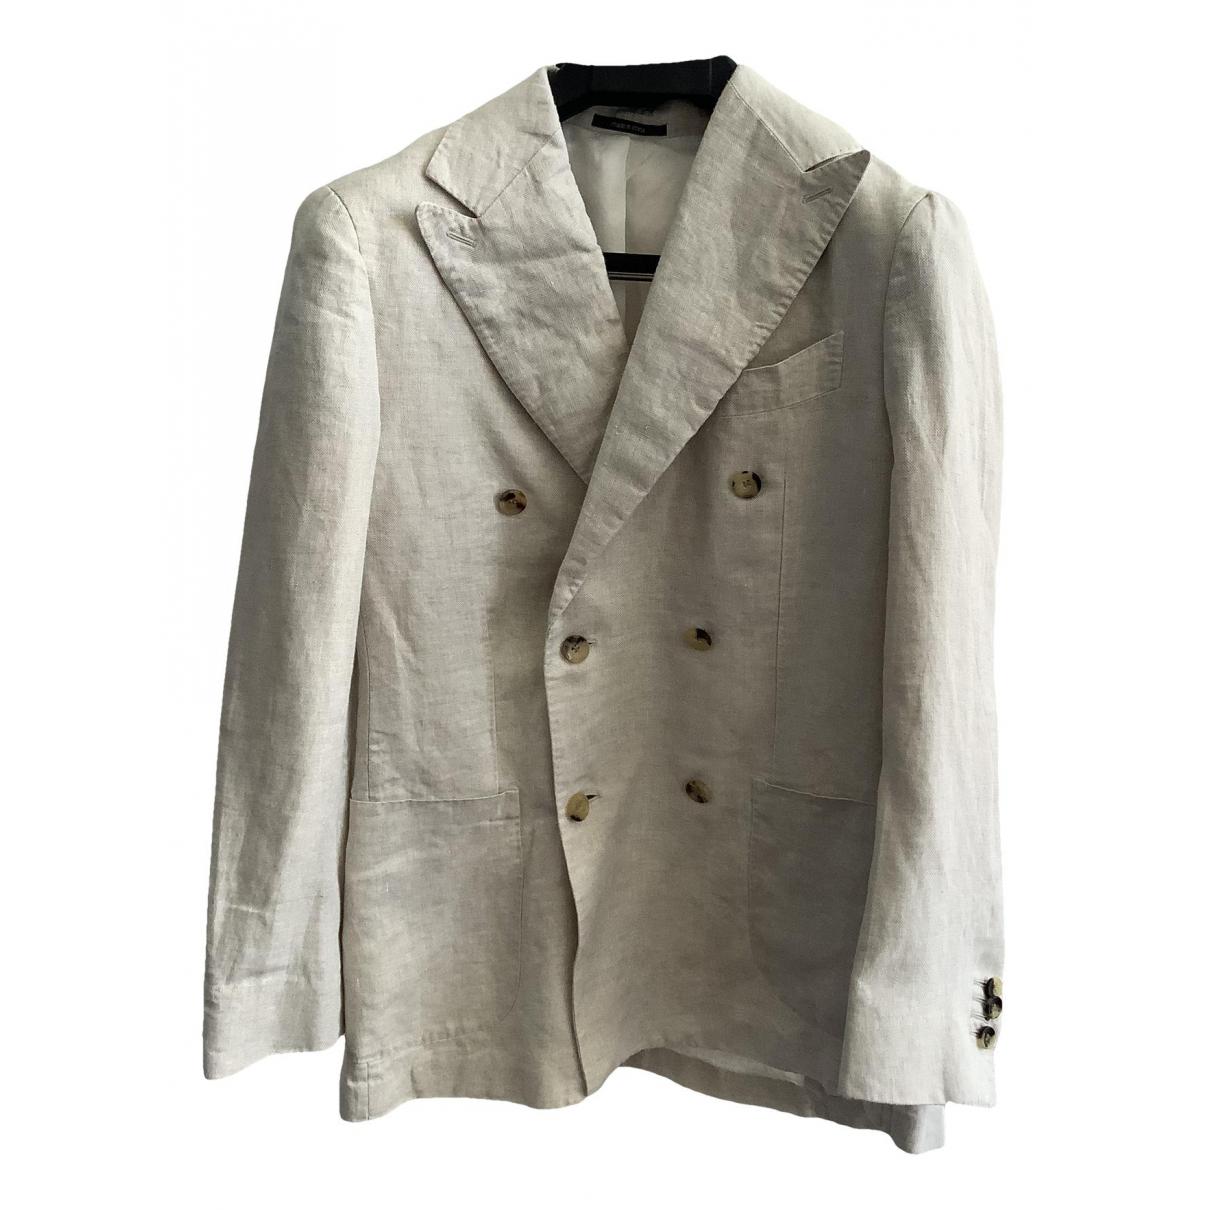 Linen suit Suitsupply